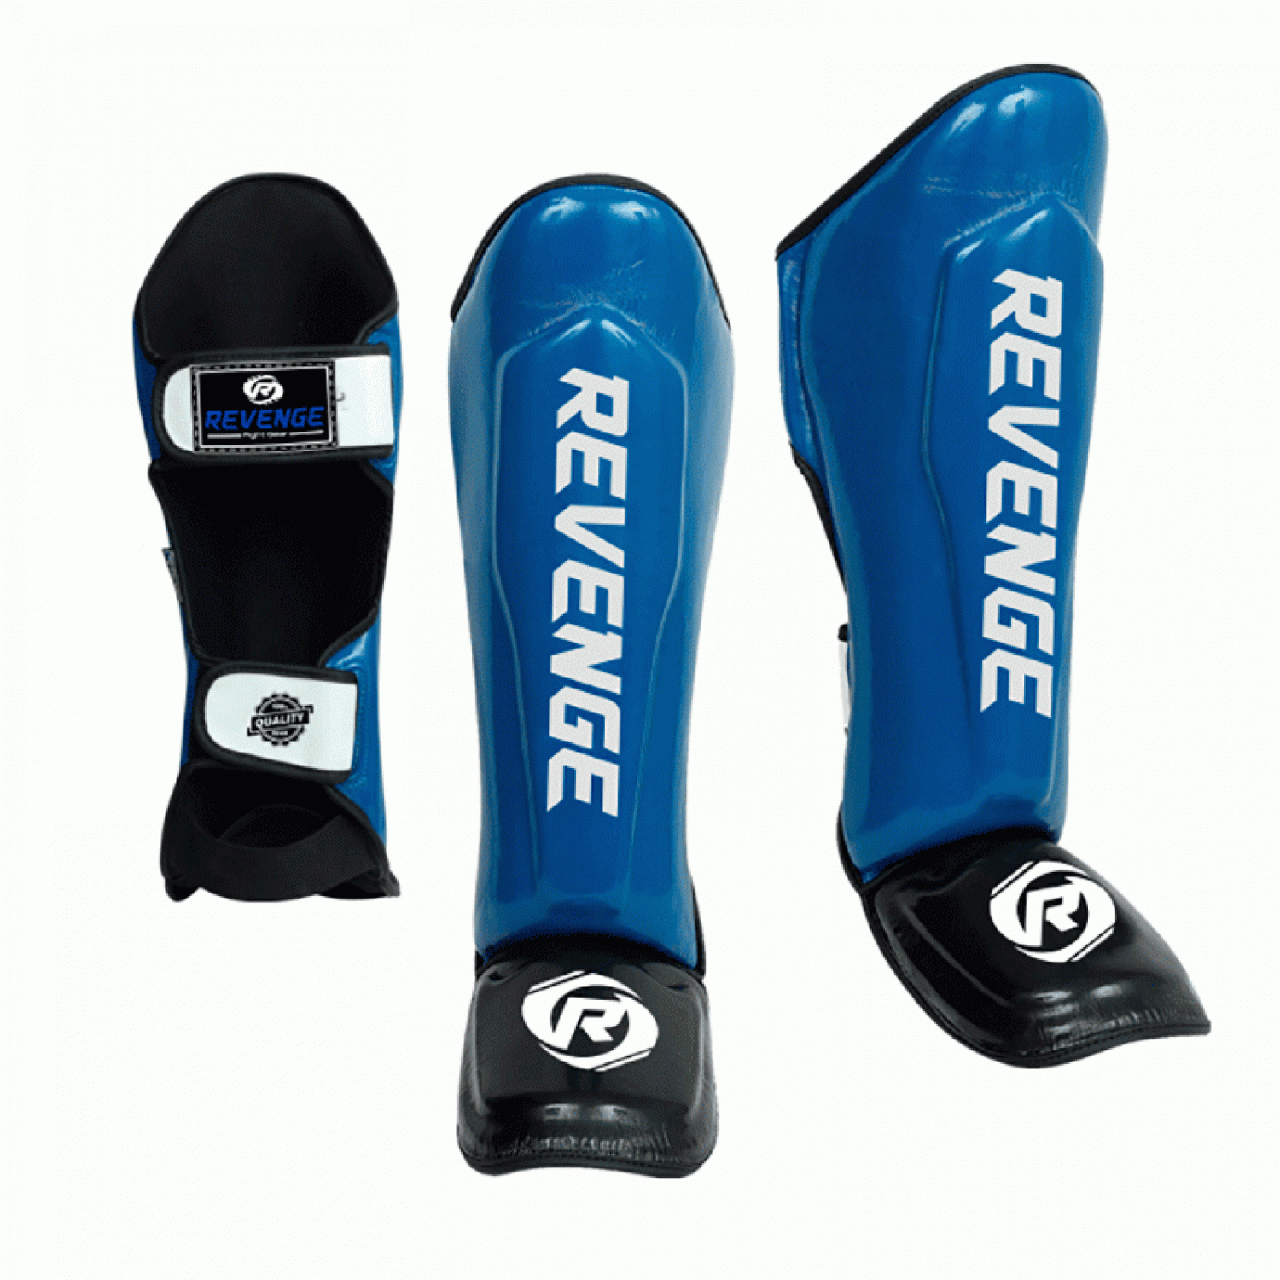 Захист гомілки та стопи для катаре, кікбоксингу та MMA р. L PU-EV-27-2719 (L) синя, високоміцна на липучці